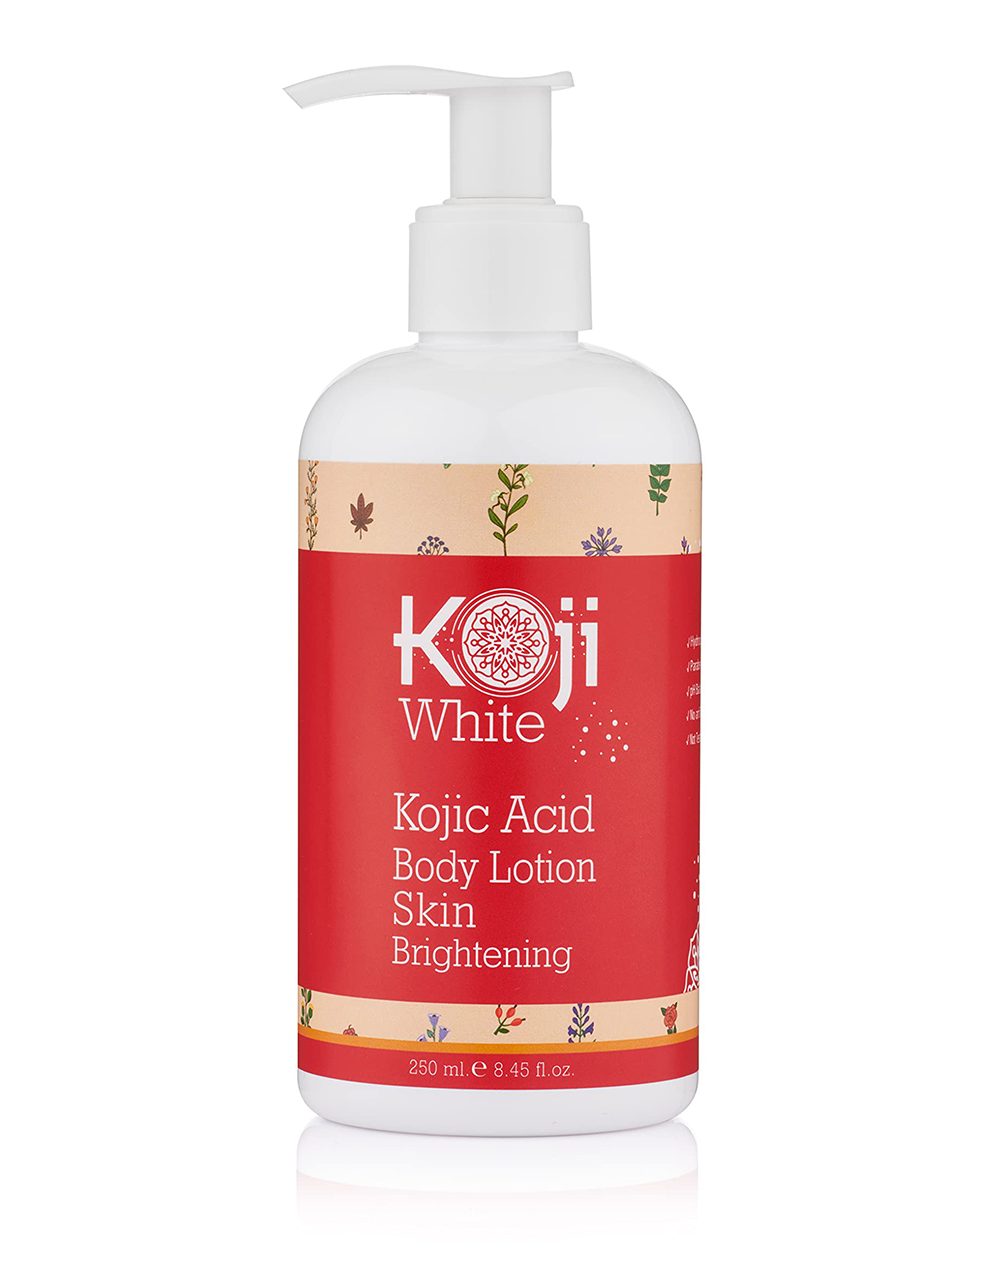 Sữa dưỡng thể trắng da nào tốt? Koji White Kojic Acid Skin Brightening Body Lotion.